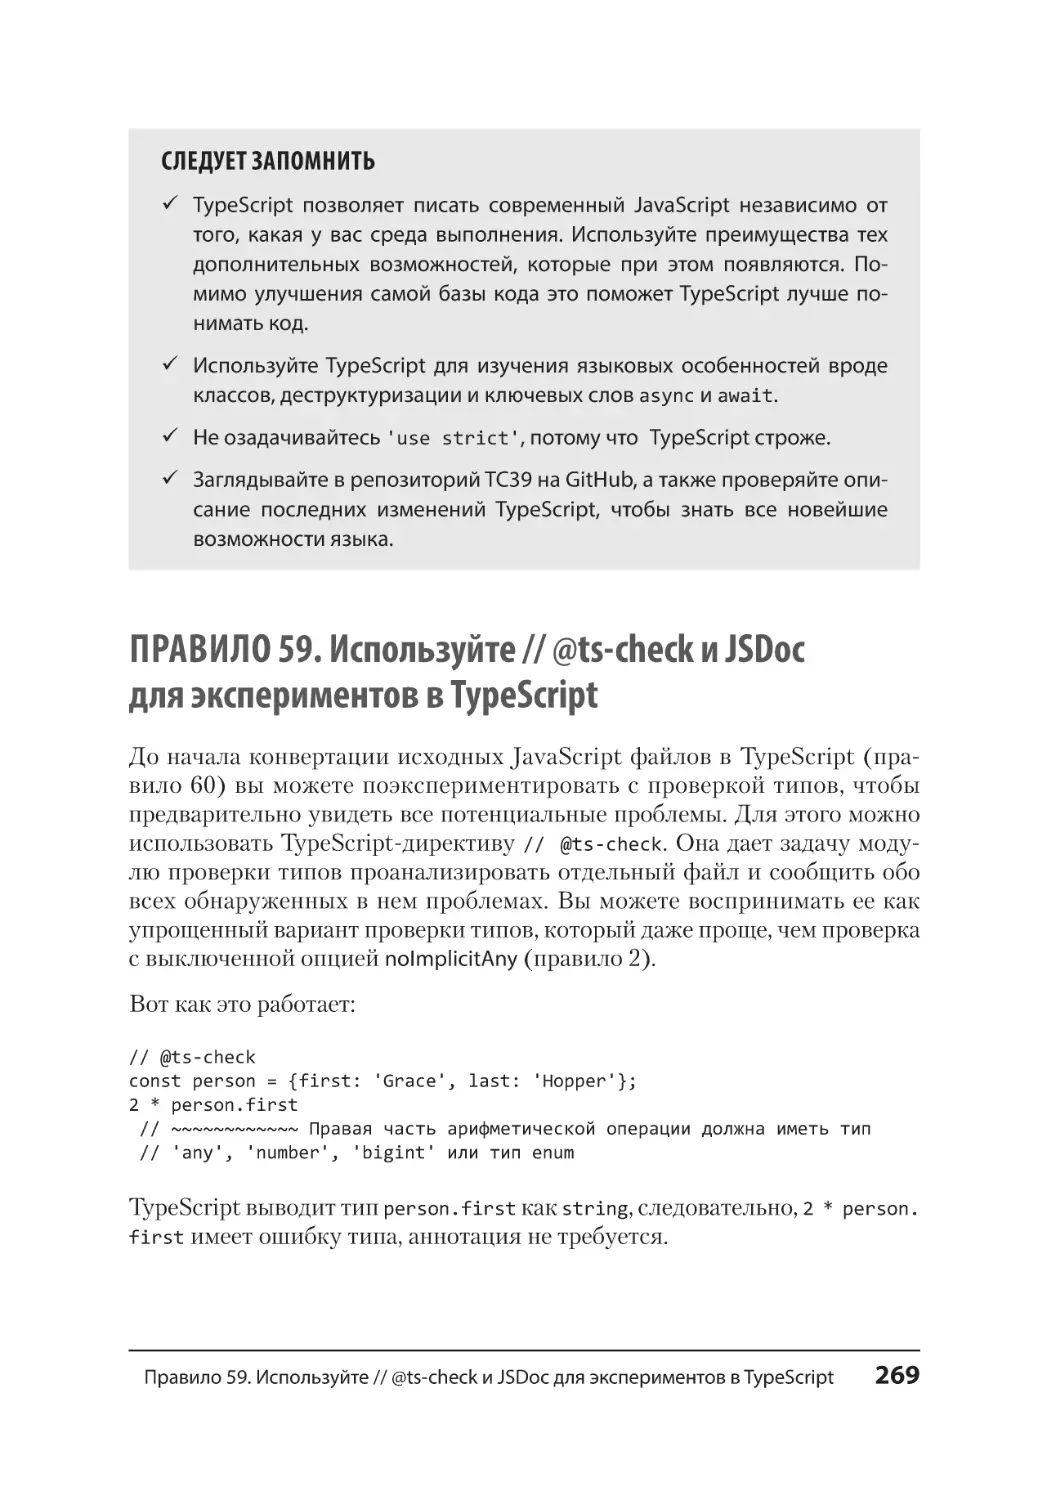 Правило 59. Используйте // @ts-check и JSDoc для экспериментов в TypeScript